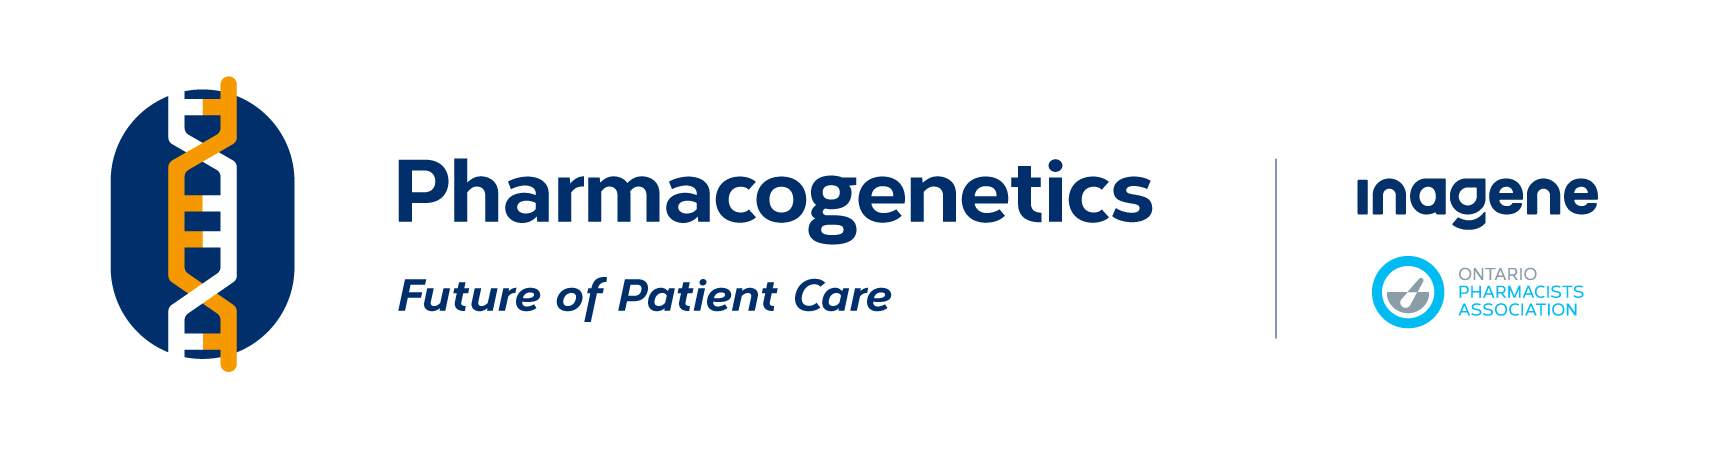 Pharmacogenetics-FINAL